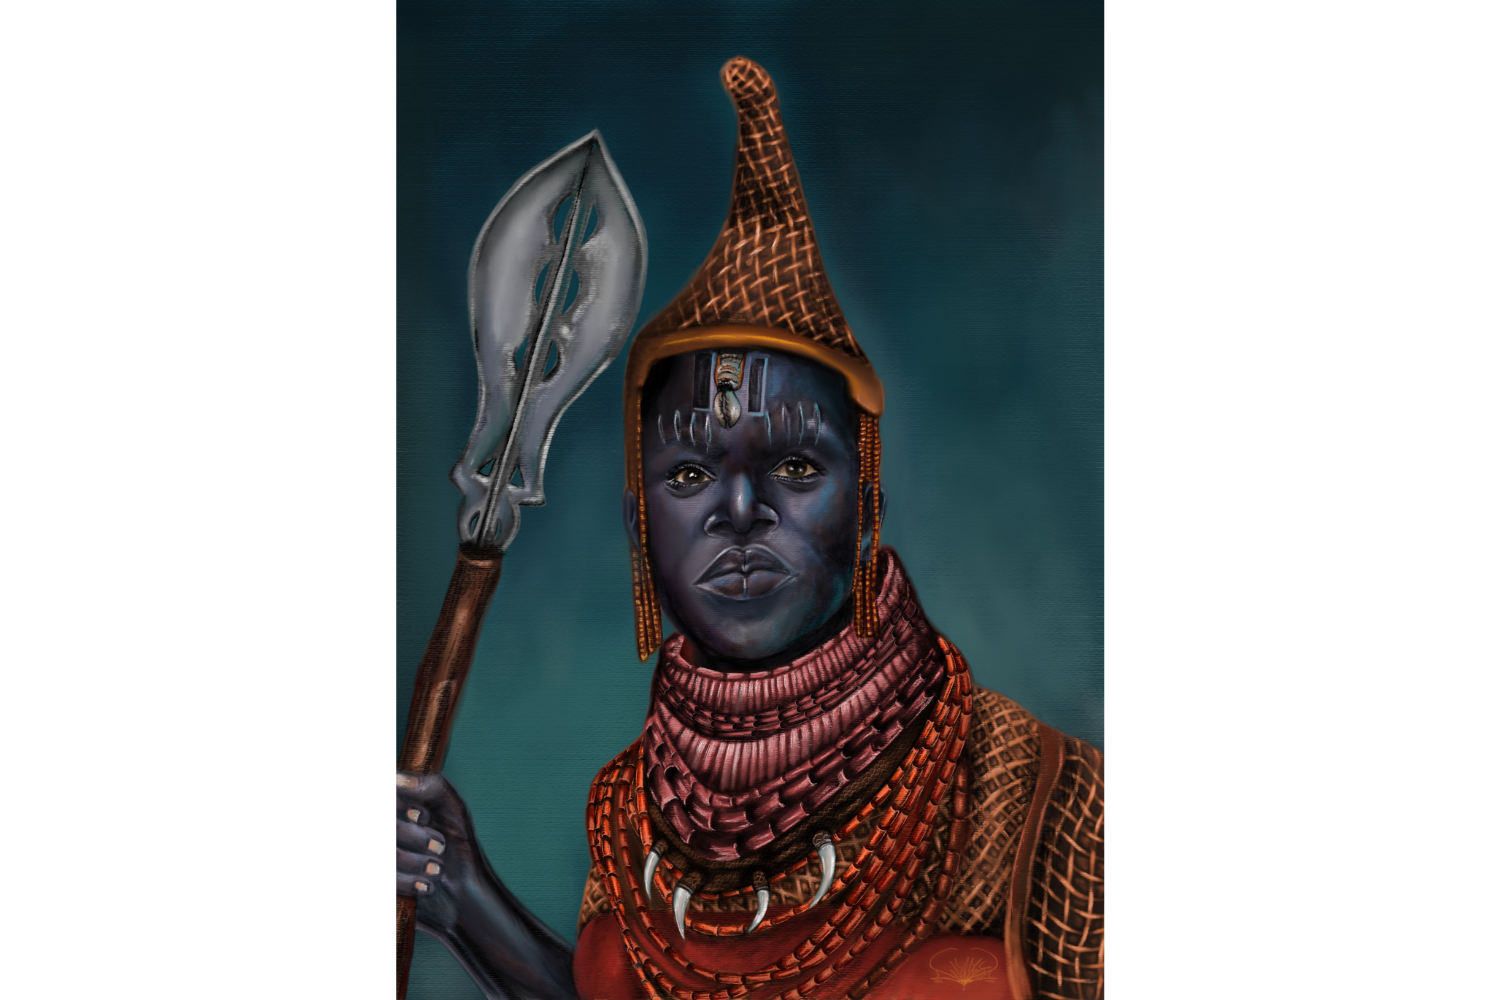 Iyoba Idia: rainha-mãe do reino do Benin (povo Edo, atualmente uma região da Nigéria) que assumiu o comando militar no século XVI e garantiu vitórias importantes. Ilustração de Wannata Rodrigues.